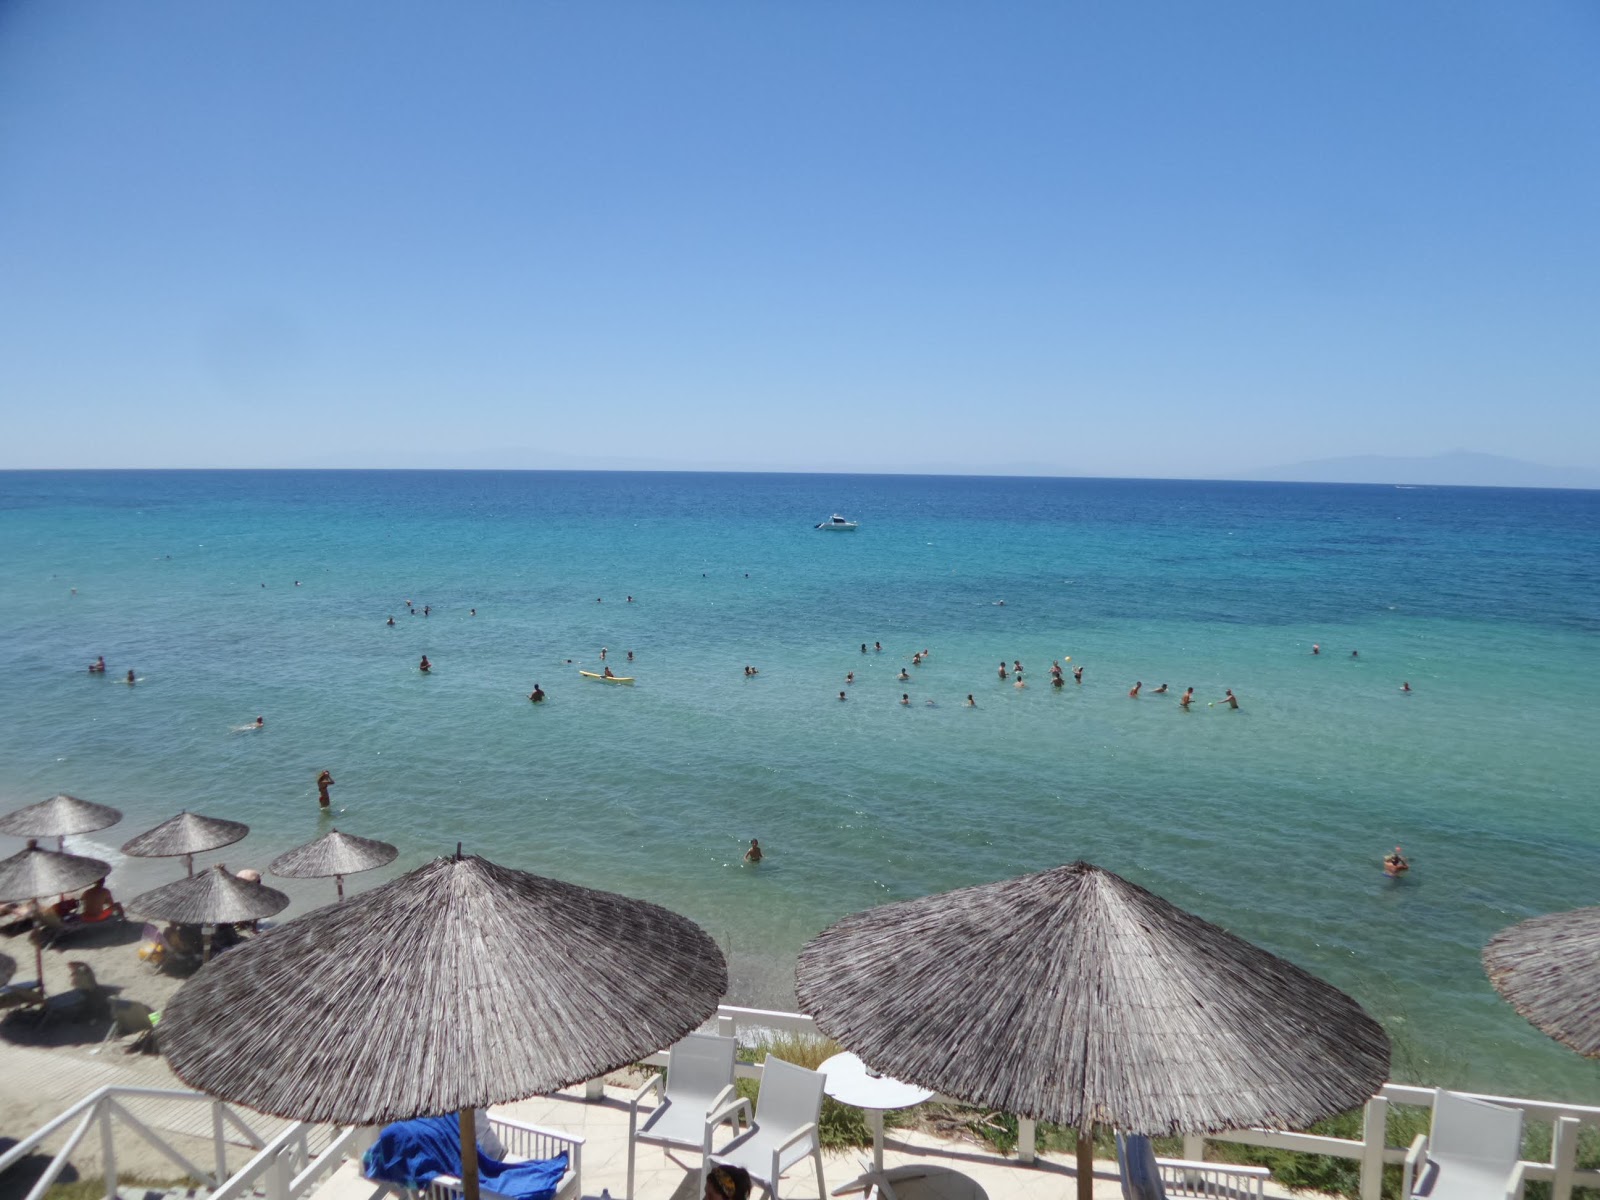 Fotografie cu Elani beach - locul popular printre cunoscătorii de relaxare